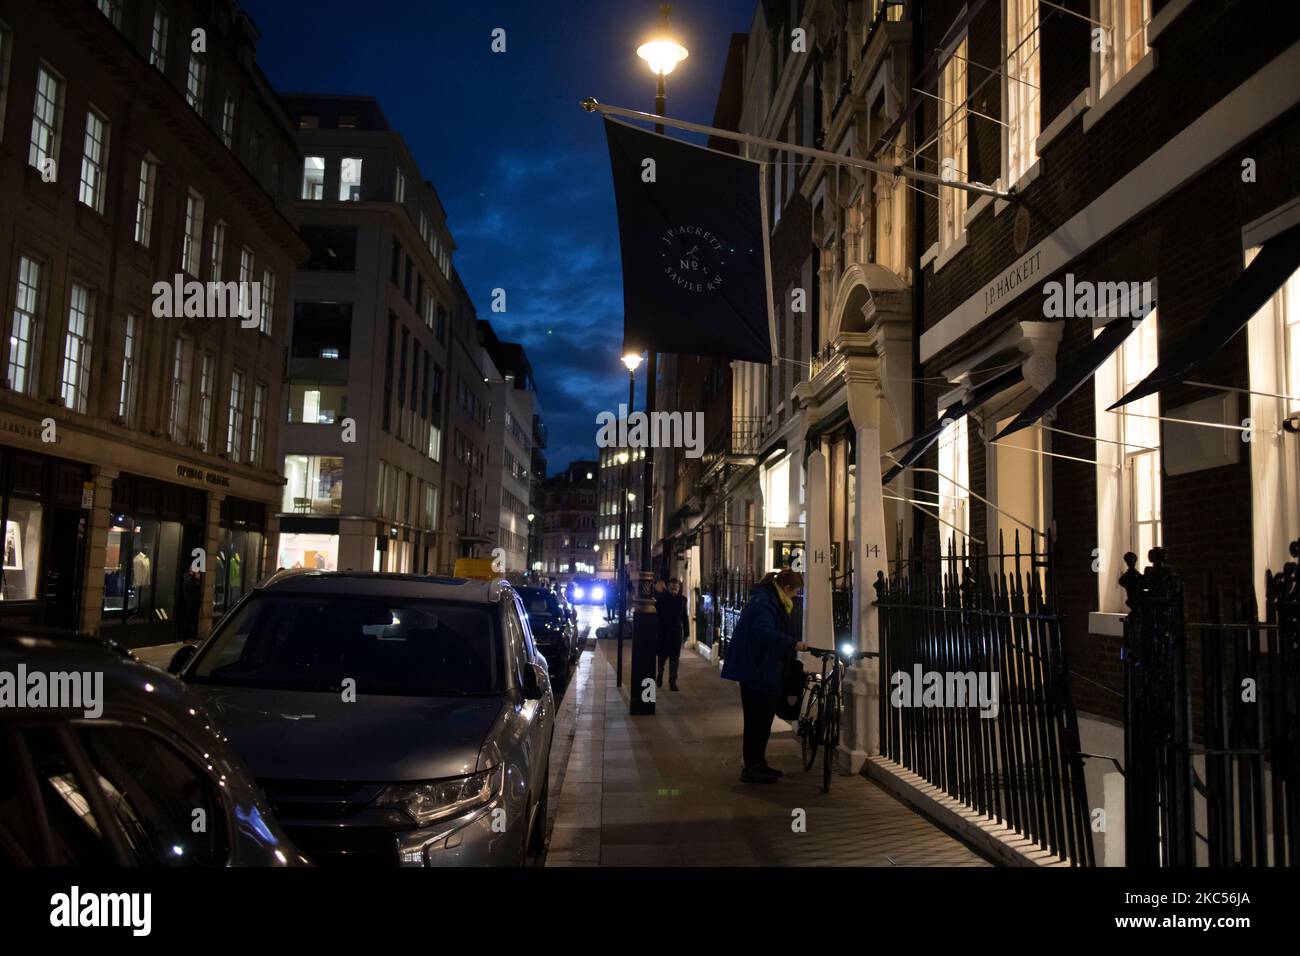 Savile Row à l'heure de la nuit, rue réputée pour sa conception traditionnelle sur mesure pour les hommes, Mayfair, Londres, Angleterre, Royaume-Uni Banque D'Images